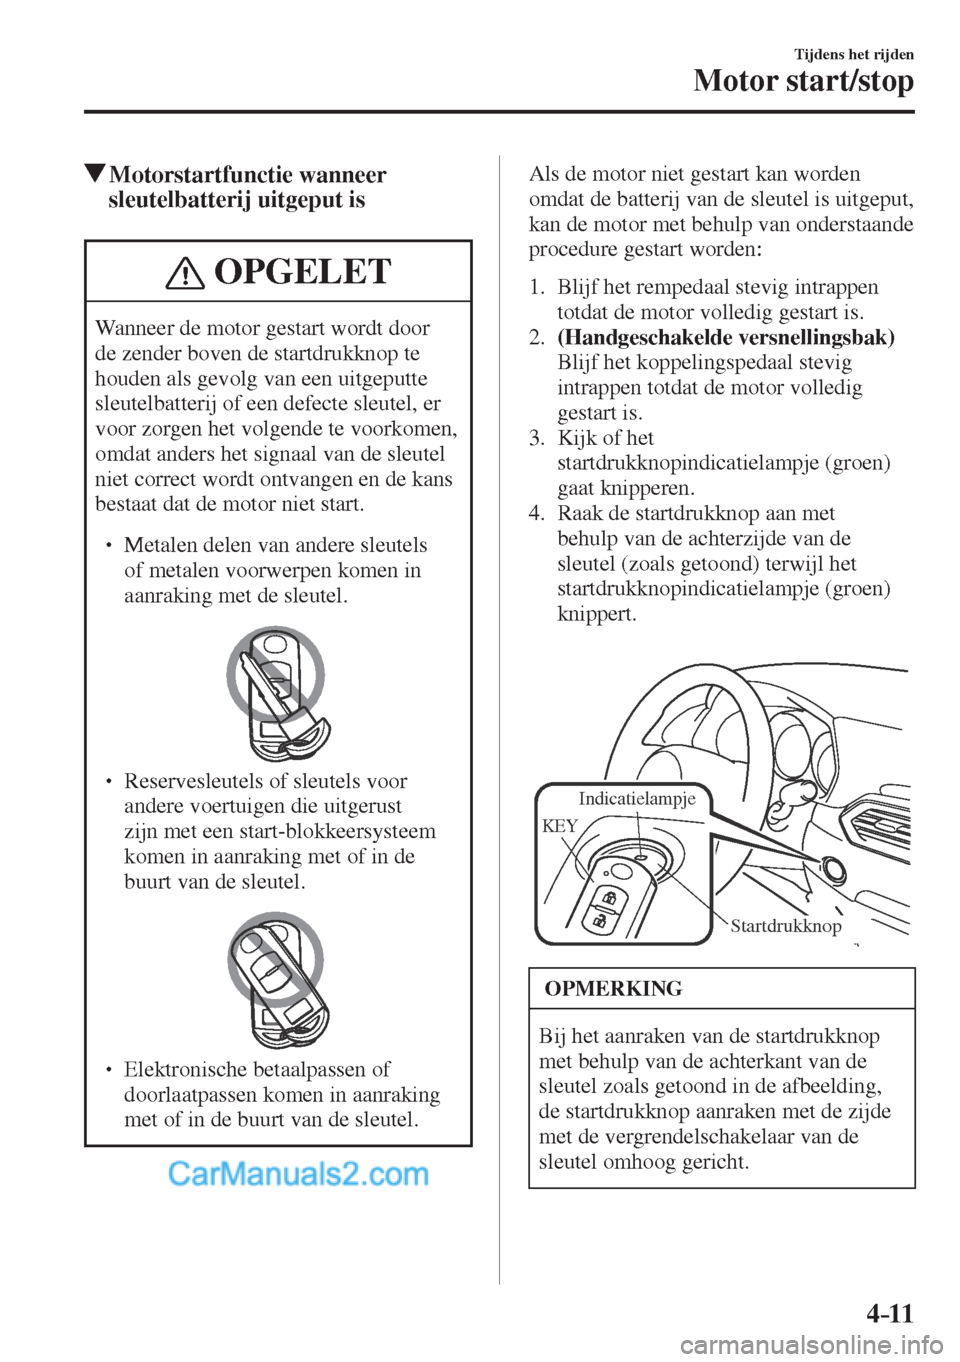 MAZDA MODEL CX-5 2017  Instruktionsbog (in Danish) 4–11
Tijdens het rijden
Motor start/stop
           Motorstartfunctie  wanneer 
sleutelbatterij uitgeput is
 OPGELET
 Wanneer de motor gestart wordt door 
de zender boven de startdrukknop te 
houden